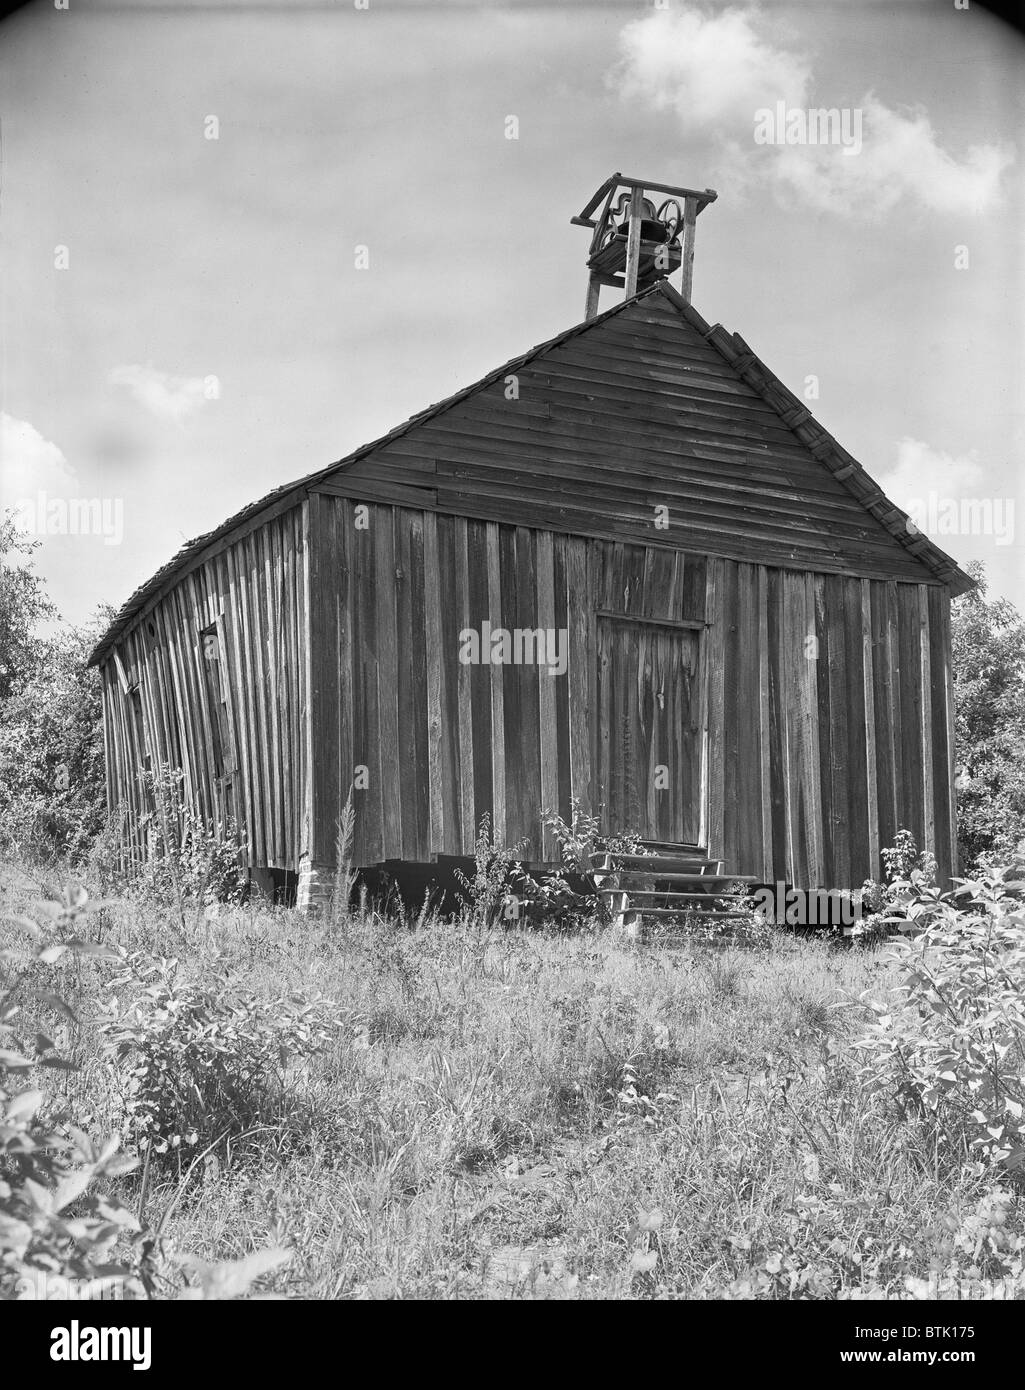 Kirche, Südosten der Vereinigten Staaten, Foto von Walker Evans, 1936. Stockfoto